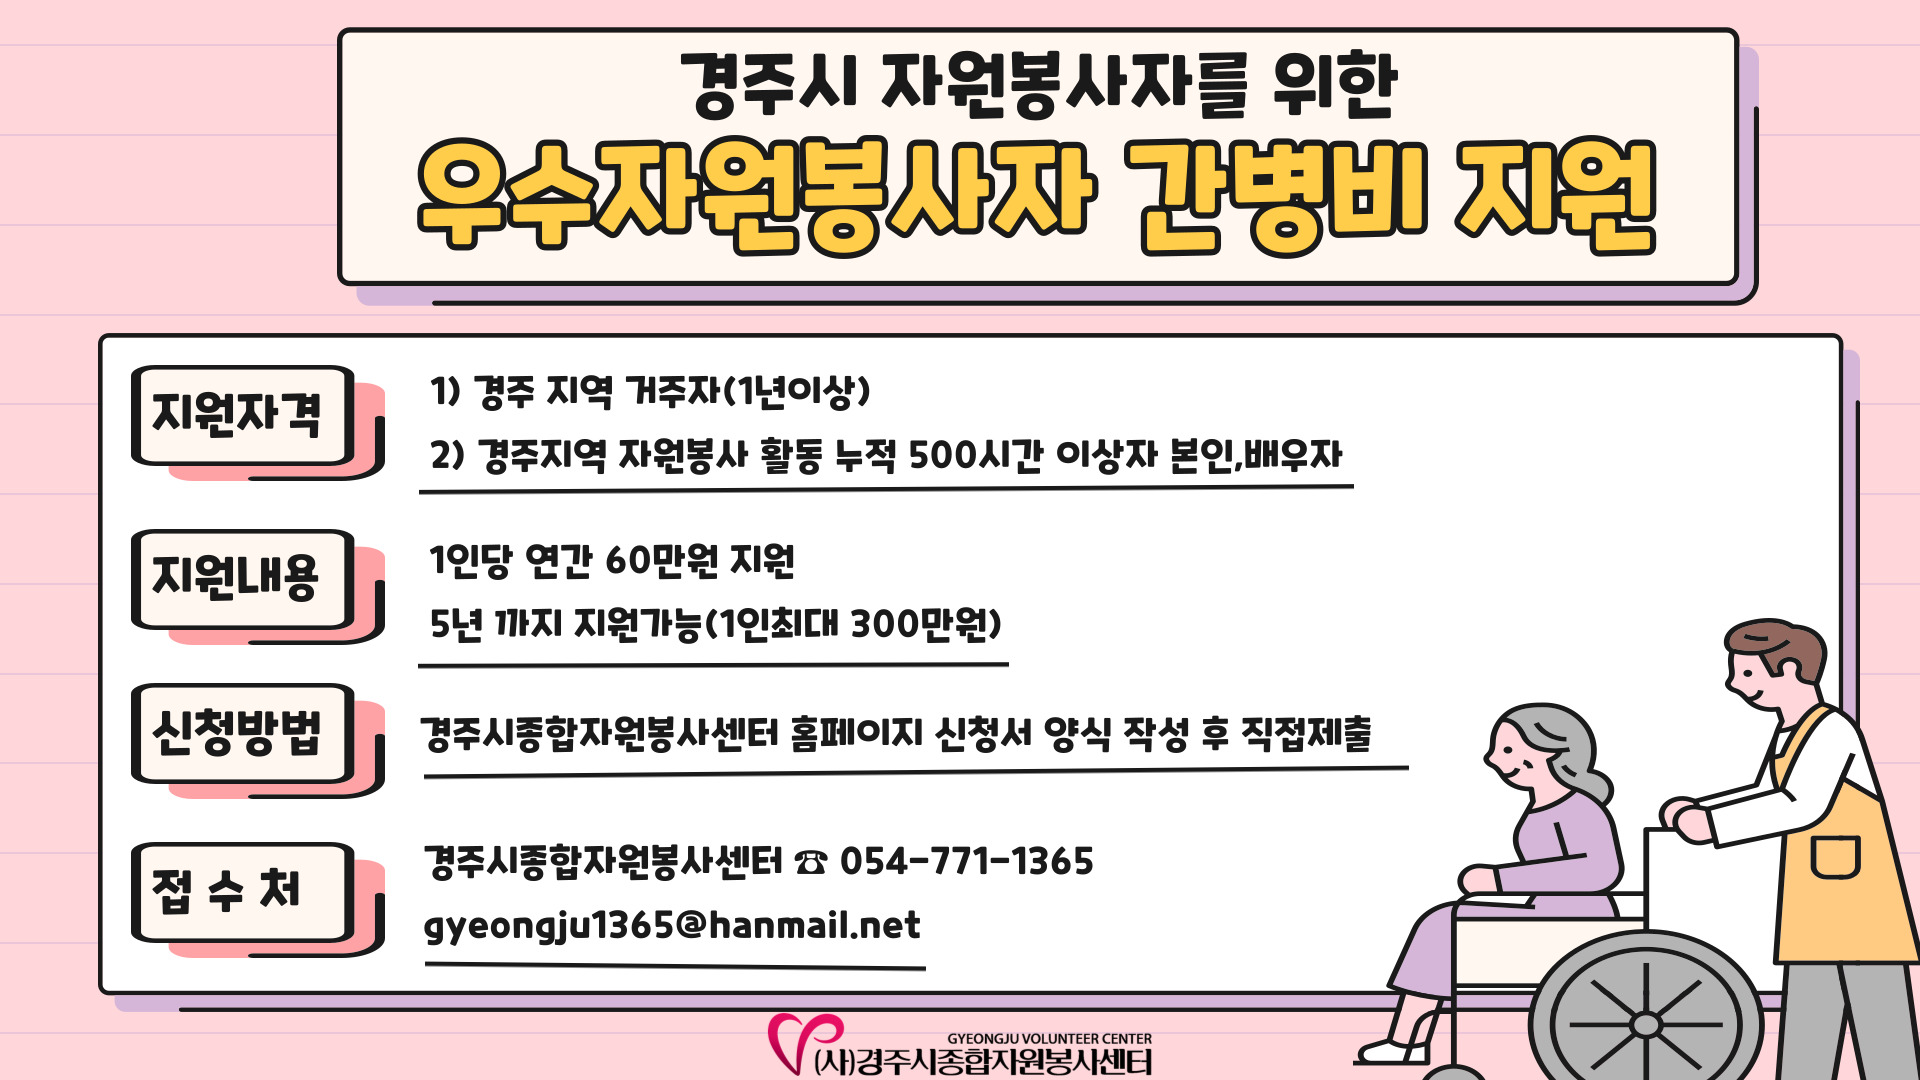 우수 자원봉사자 간병비 지원 사업 홍보 배너